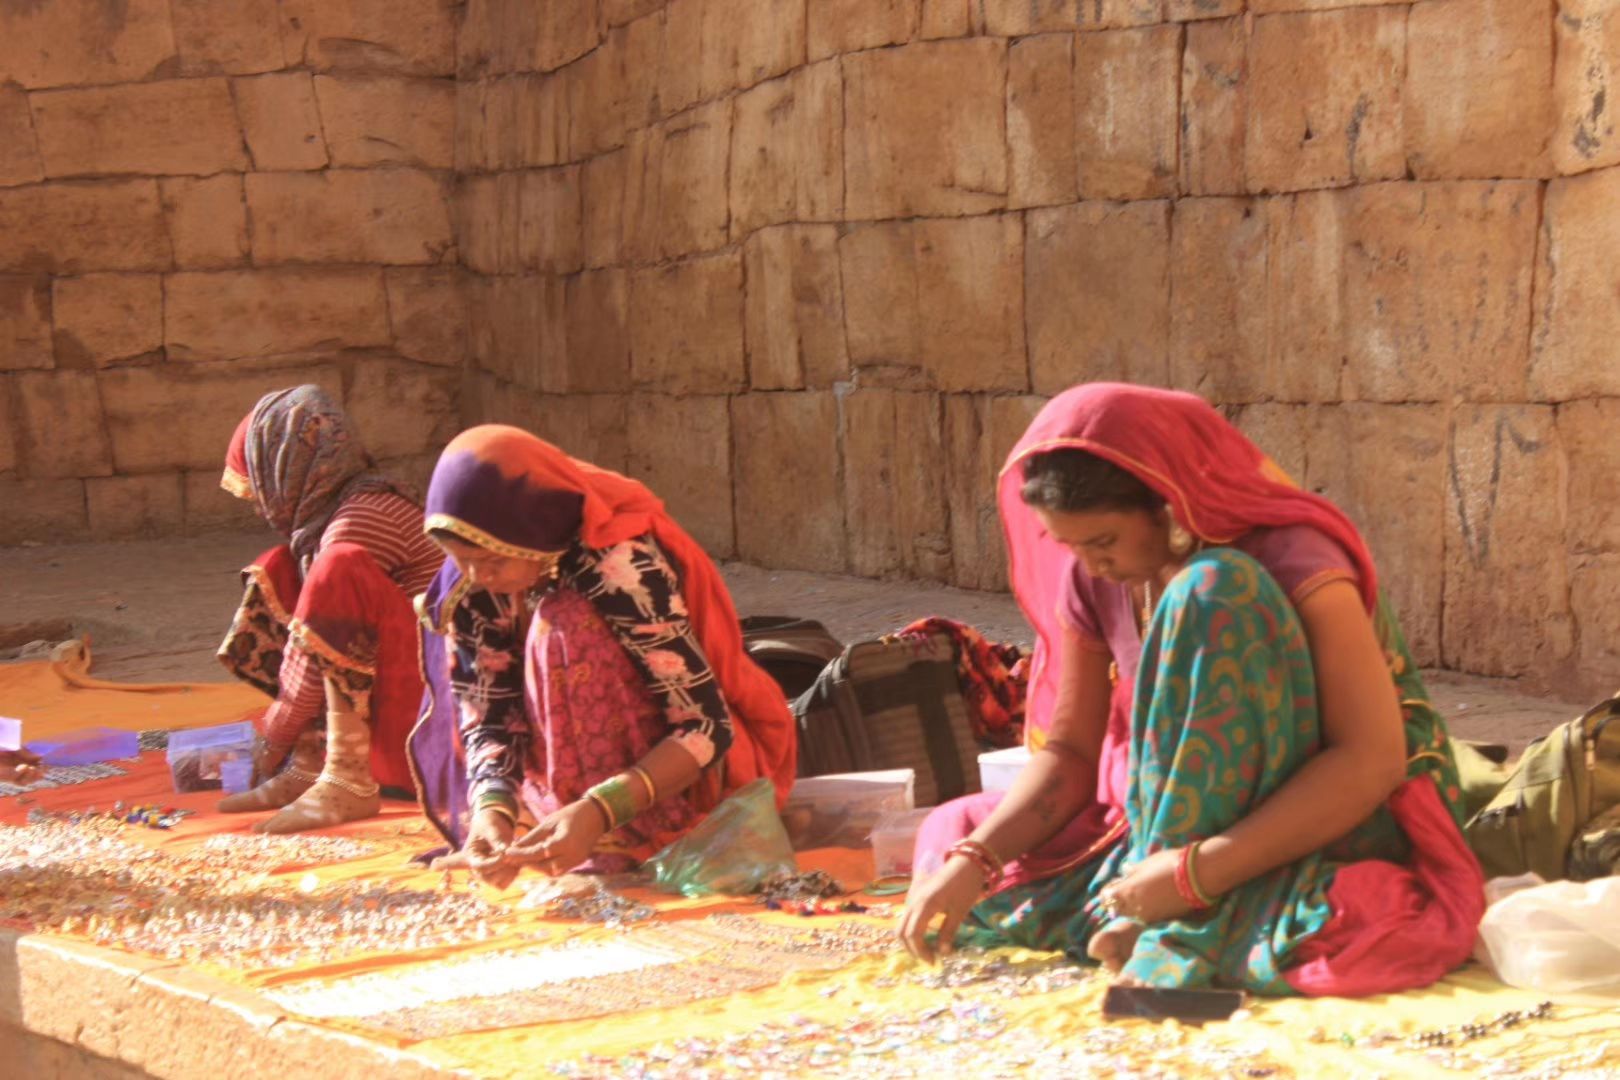 黄金城市杰伊瑟尔梅尔（Jaisalmer），位于拉贾斯坦邦的塔尔沙漠（Thar）边缘，距巴基斯坦10